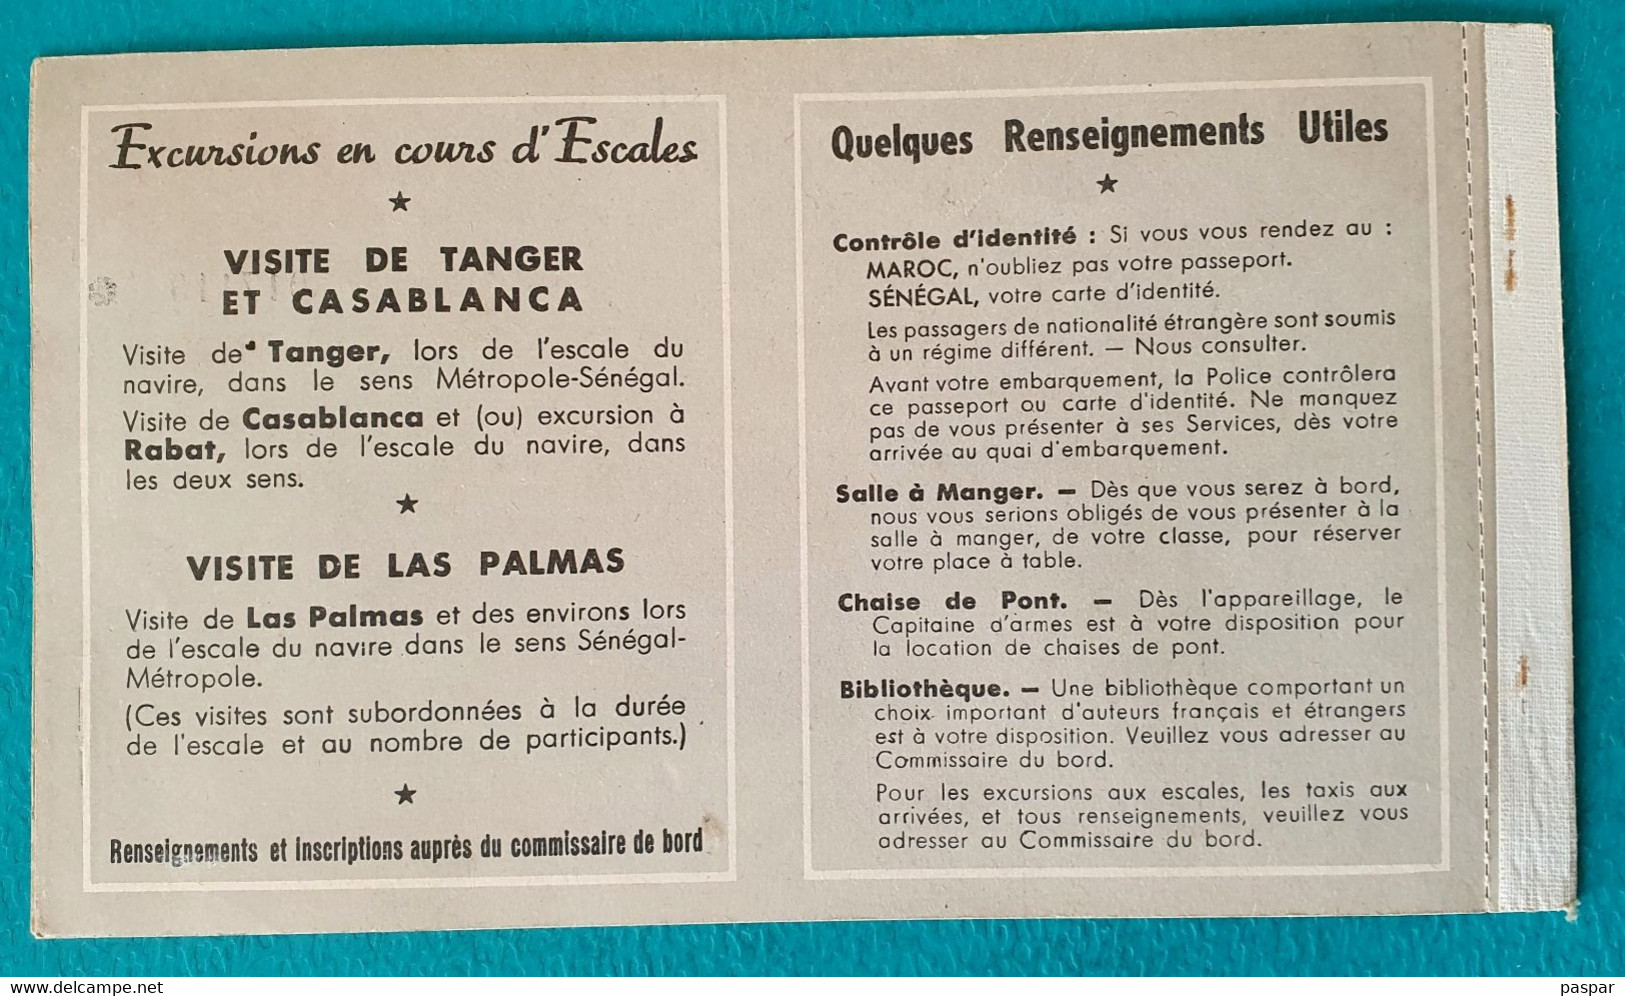 COMPAGNIE DE NAVIGATION PAQUET - BILLET DE PASSAGE ALLER SIMPLE DAKAR MARSEILLE 1ere CLASSE SENEGAL - 1956 - Welt